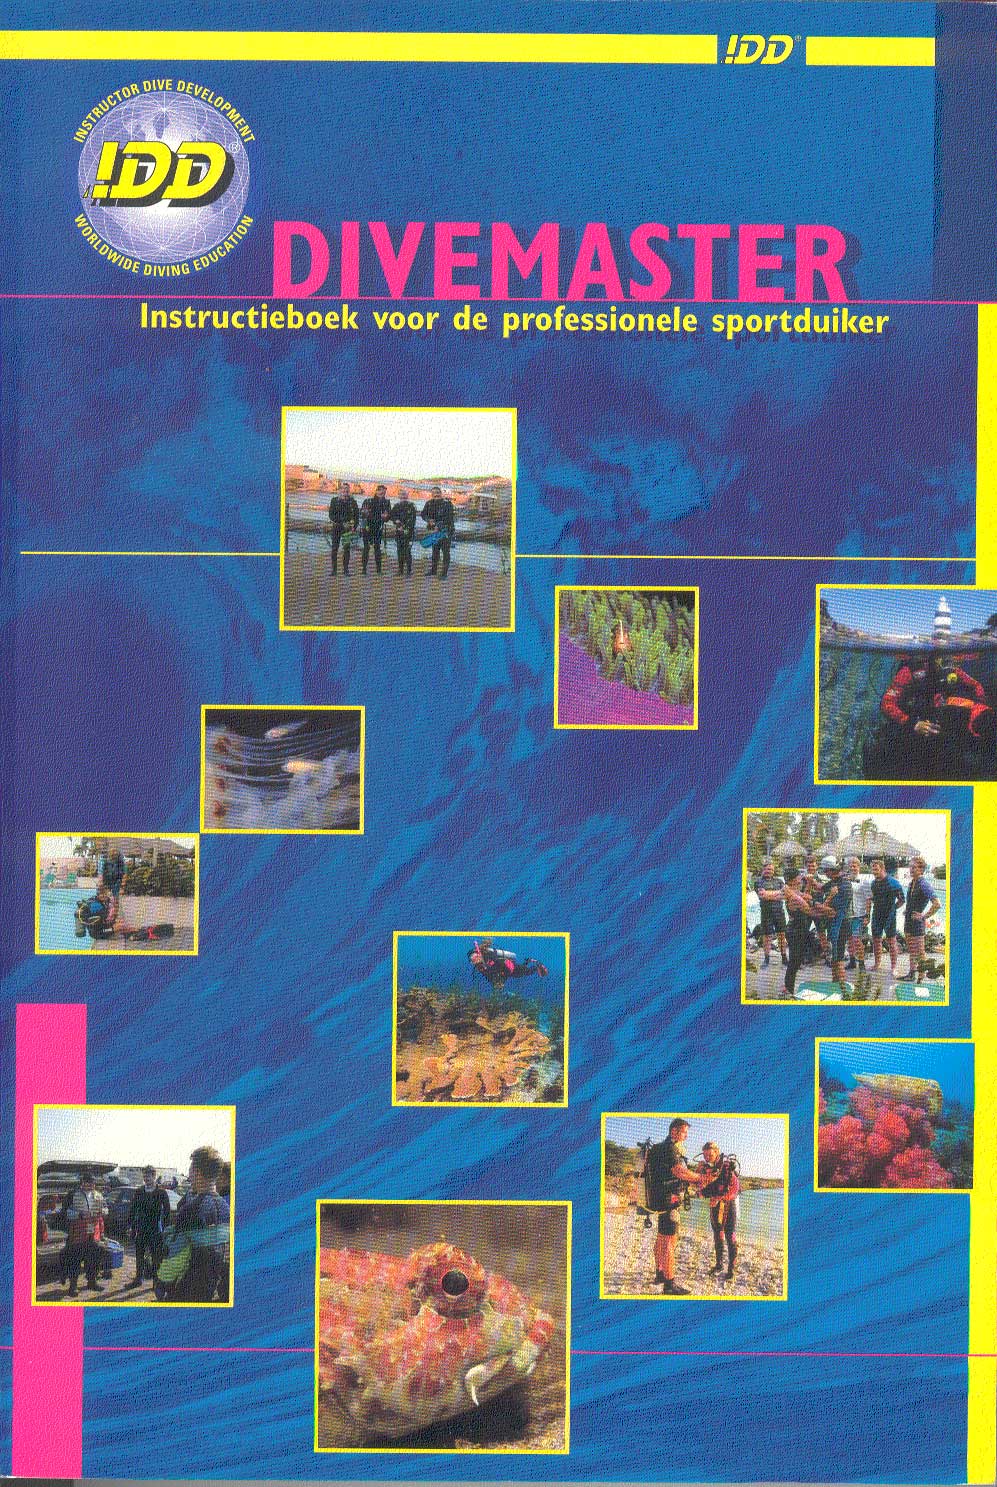 DiveMaster-web